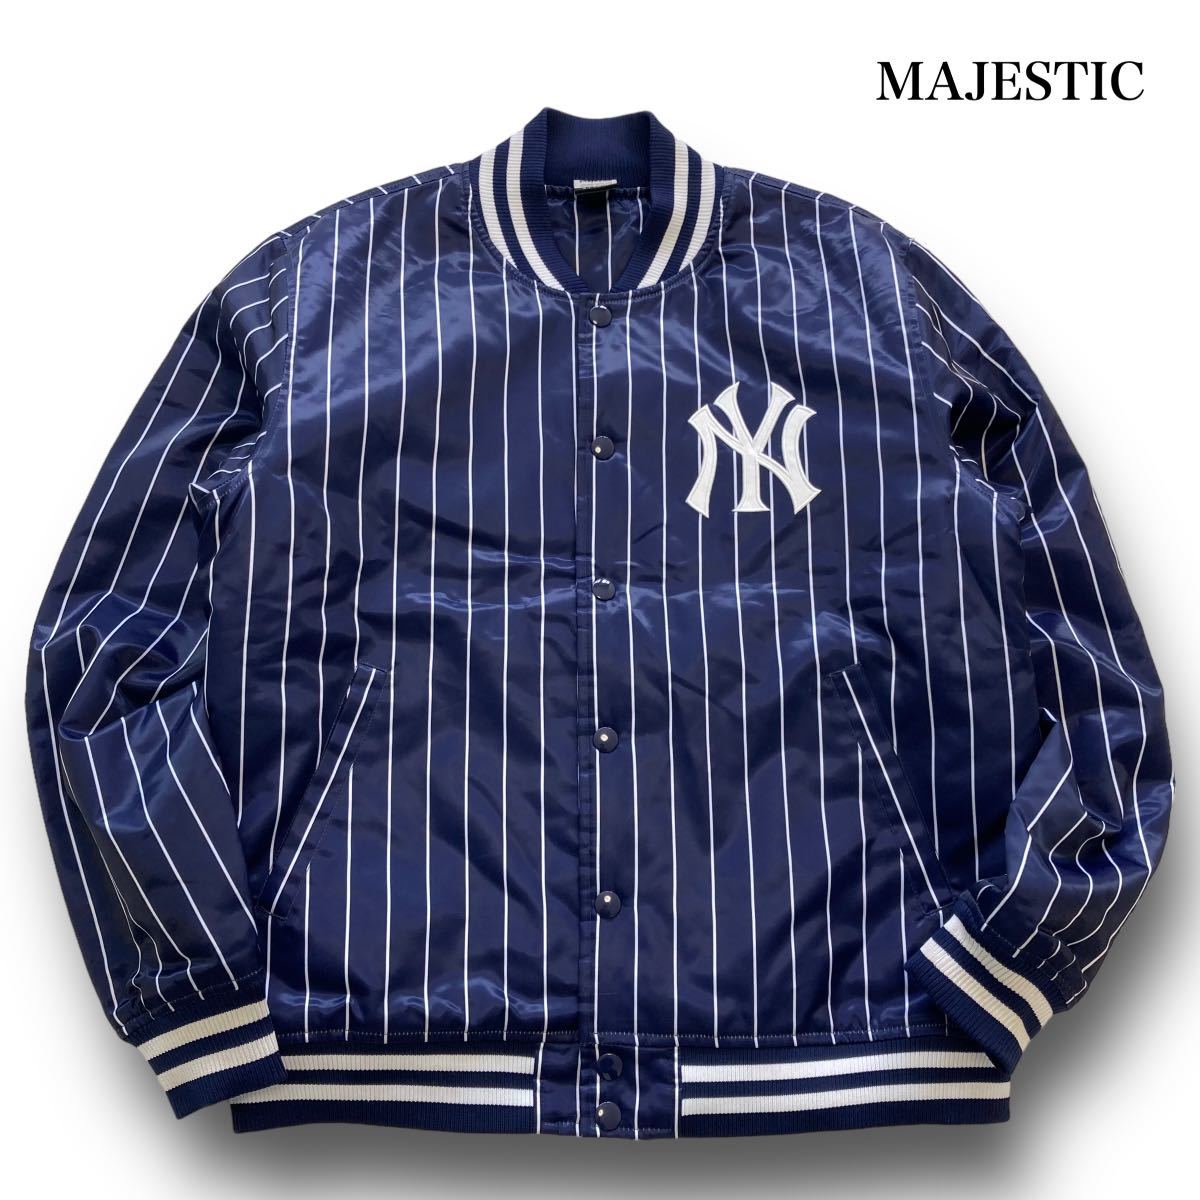 【MAJESTIC】マジェスティック ニューヨークヤンキース ストライプスタジャン (XL) ナイロンスタジアムジャンパー 獅子ロゴ MLB 紺 (XL)